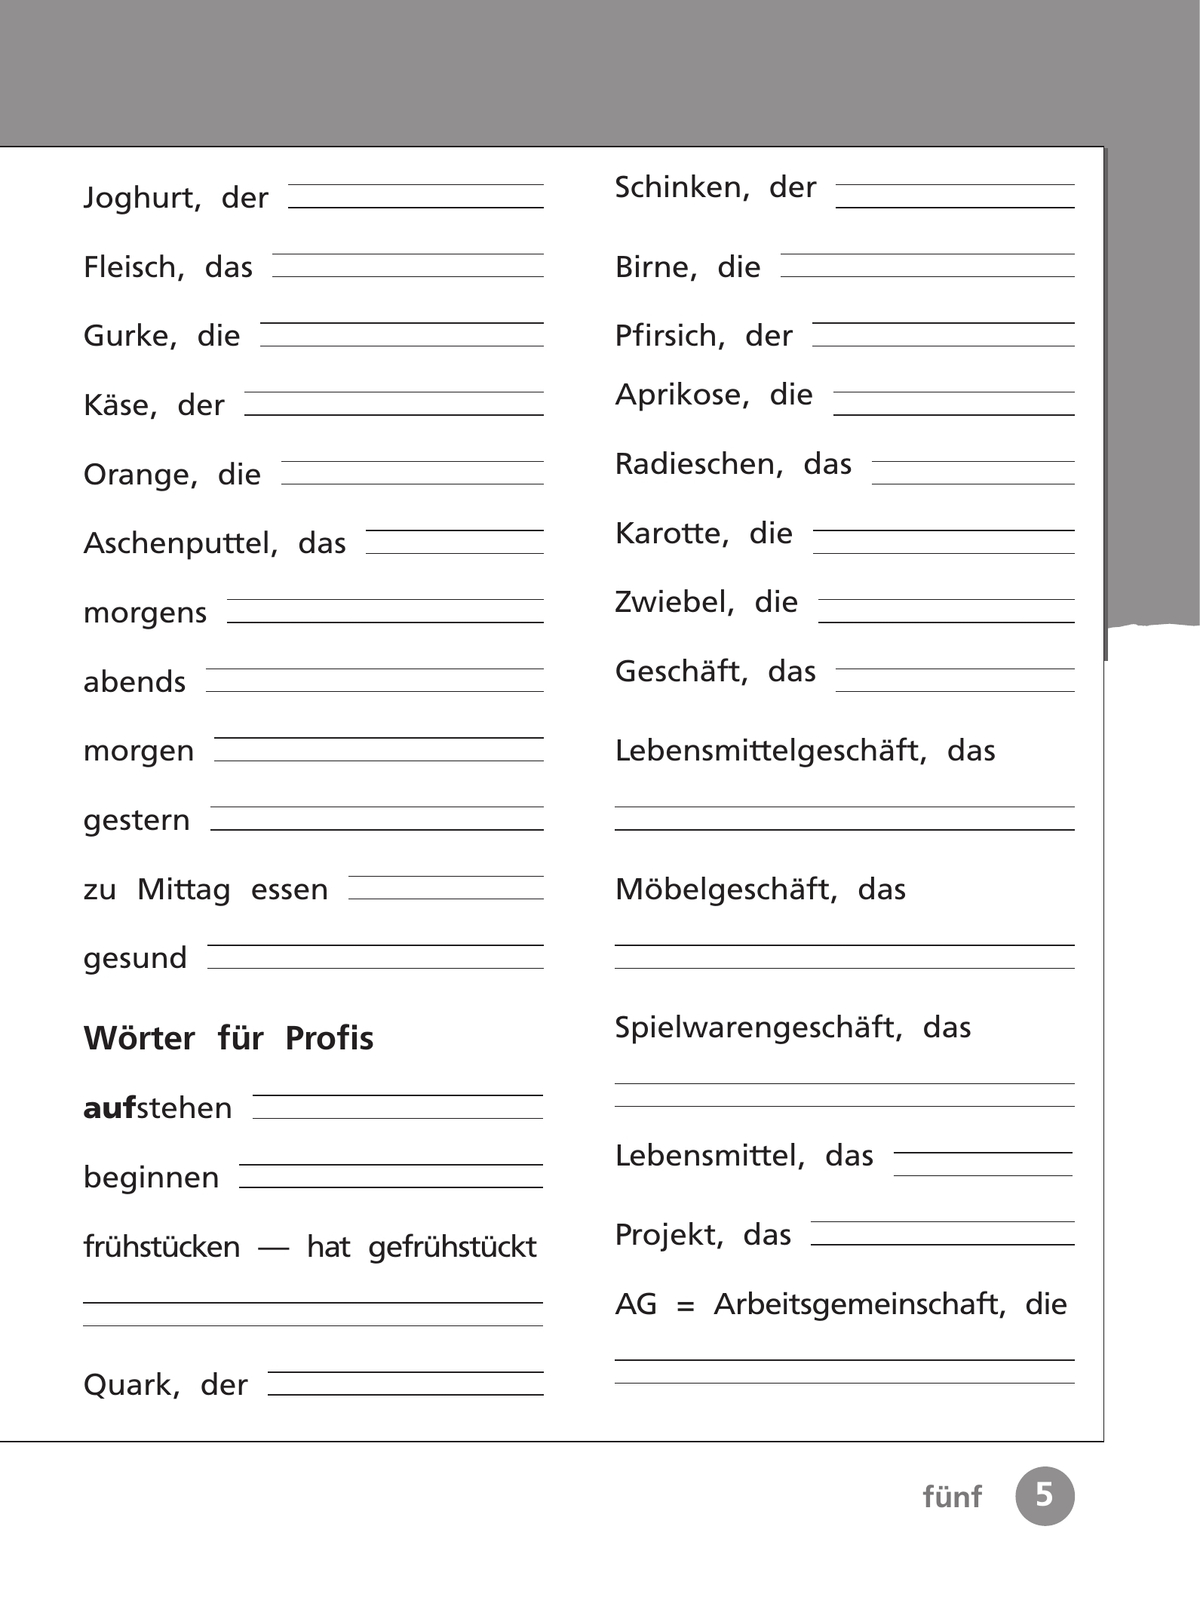 Немецкий язык. Рабочая тетрадь. 3 класс. В 2 ч. Часть 2 6